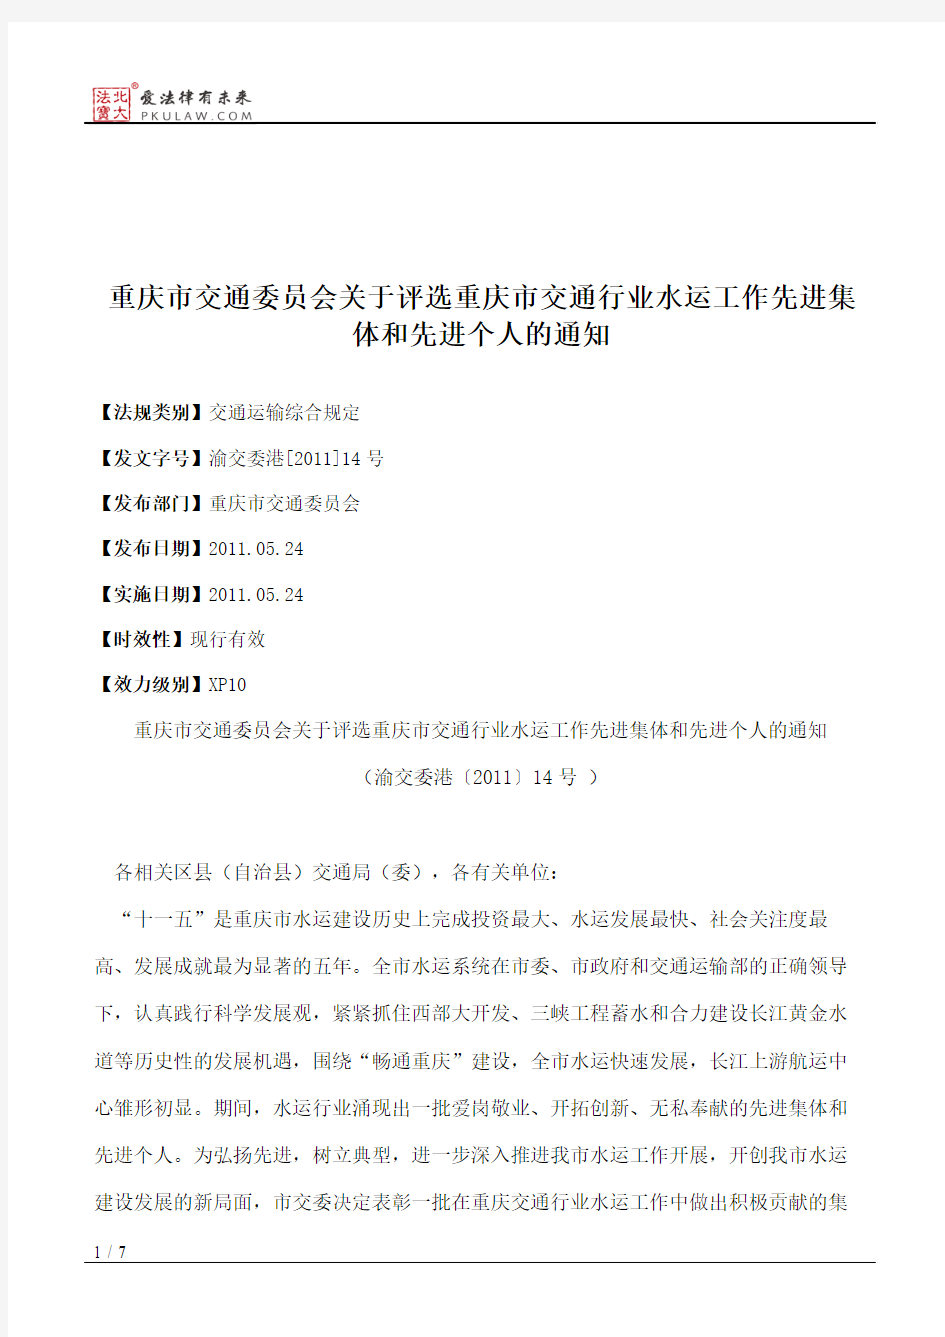 重庆市交通委员会关于评选重庆市交通行业水运工作先进集体和先进